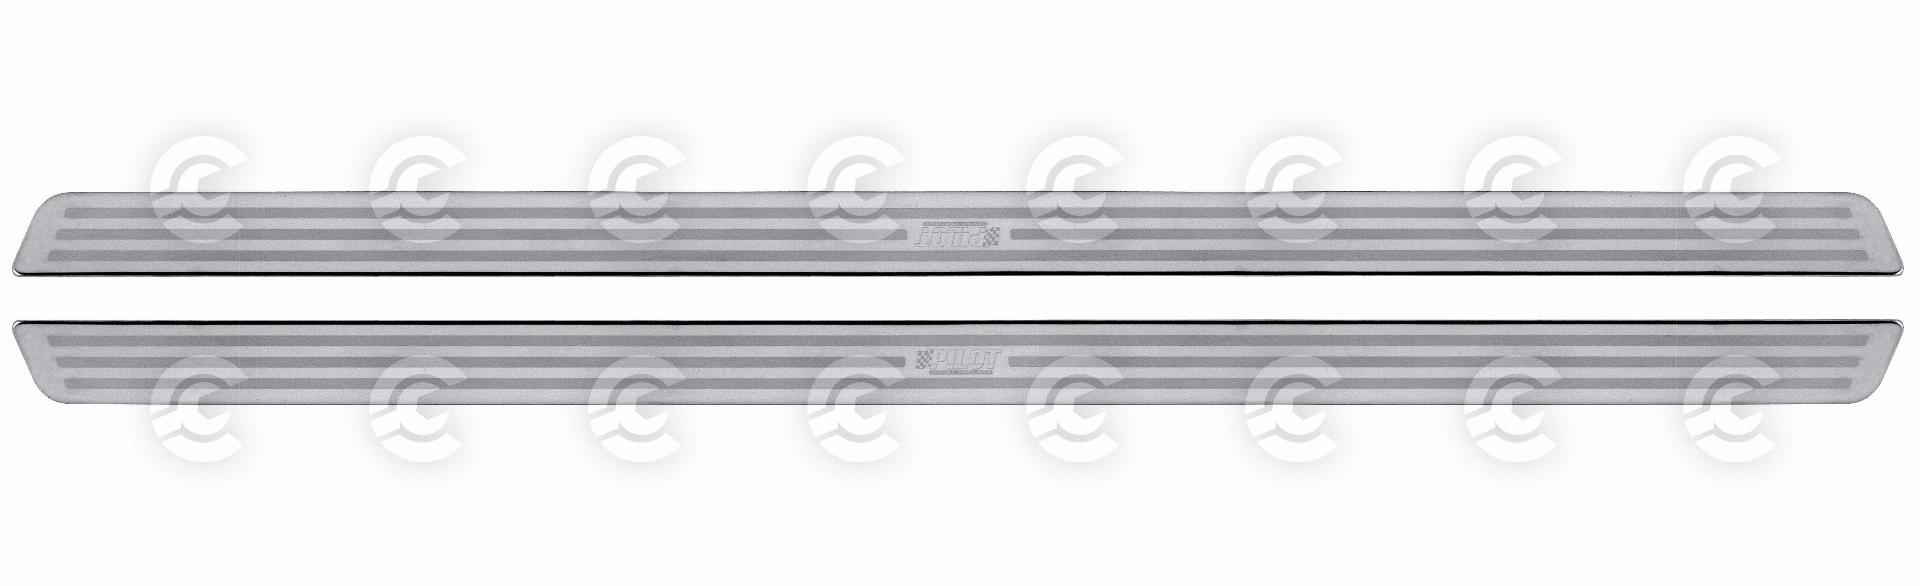 Profili battitacco in acciaio inox - PB-5 - 625x32 mm